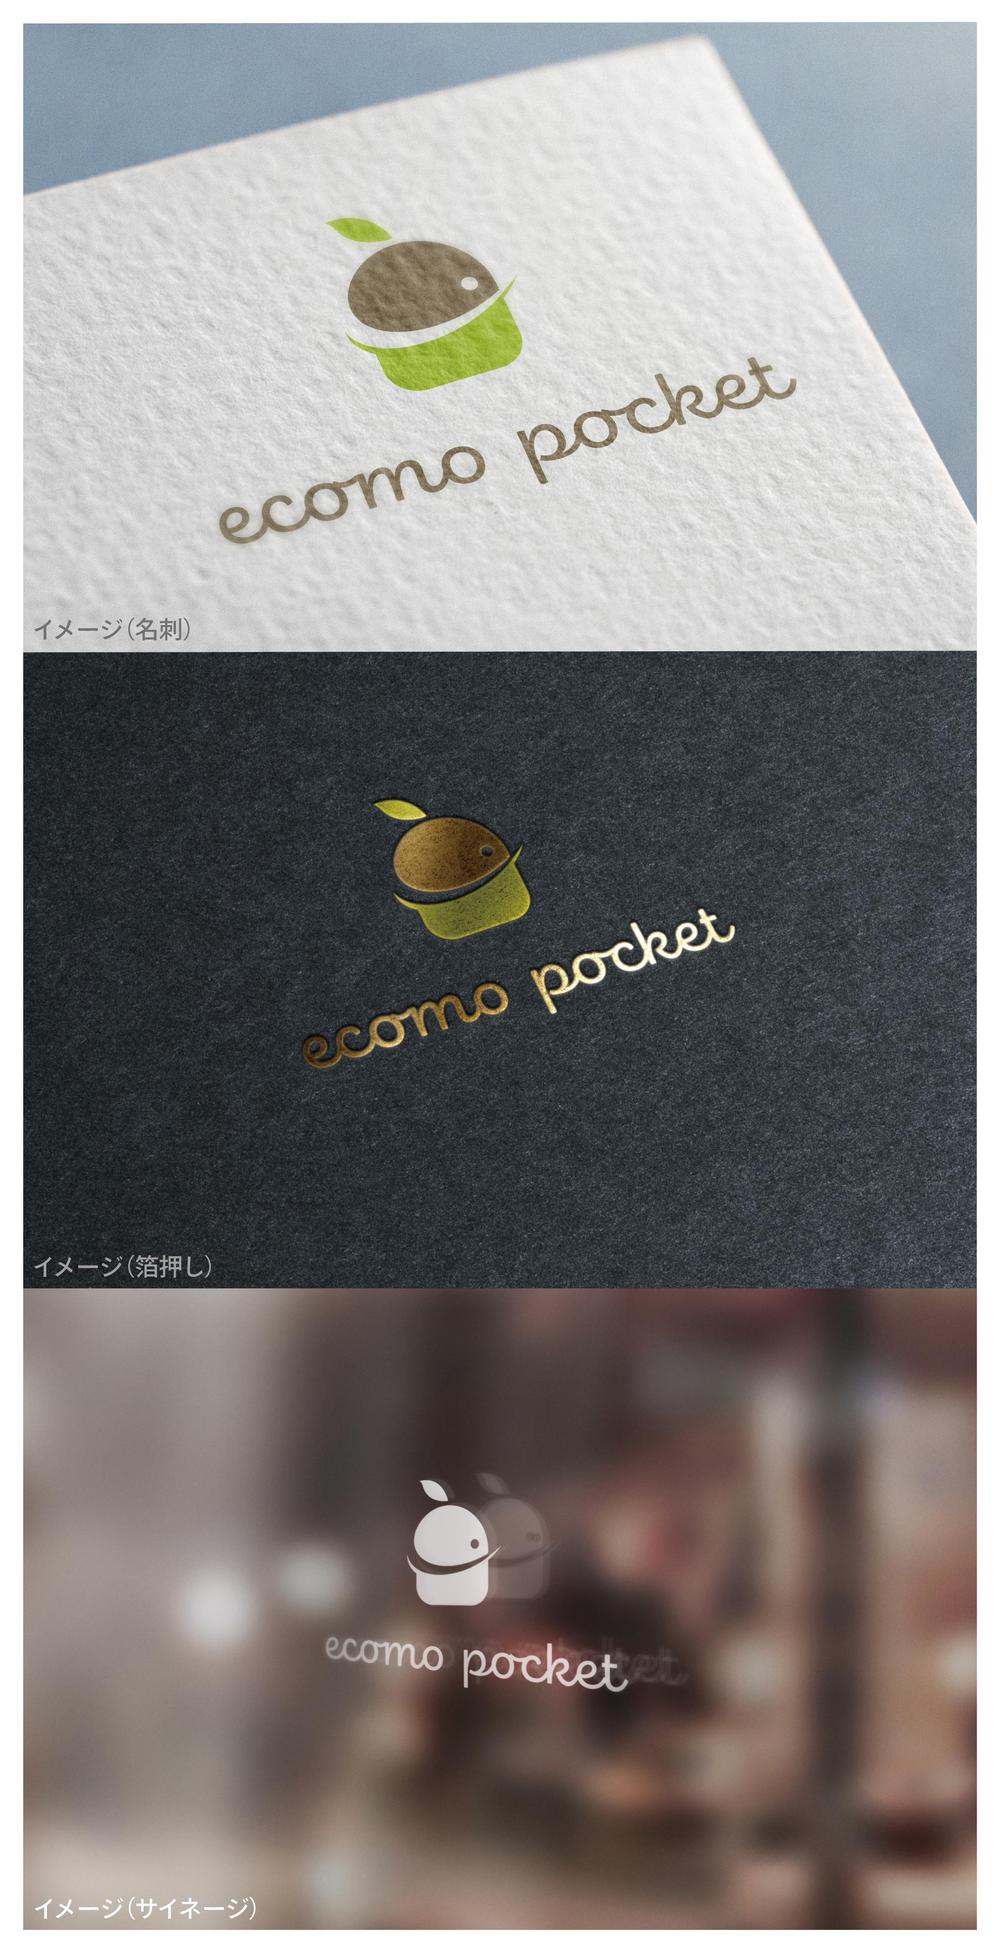 ecomo pocket_logo02_01.jpg